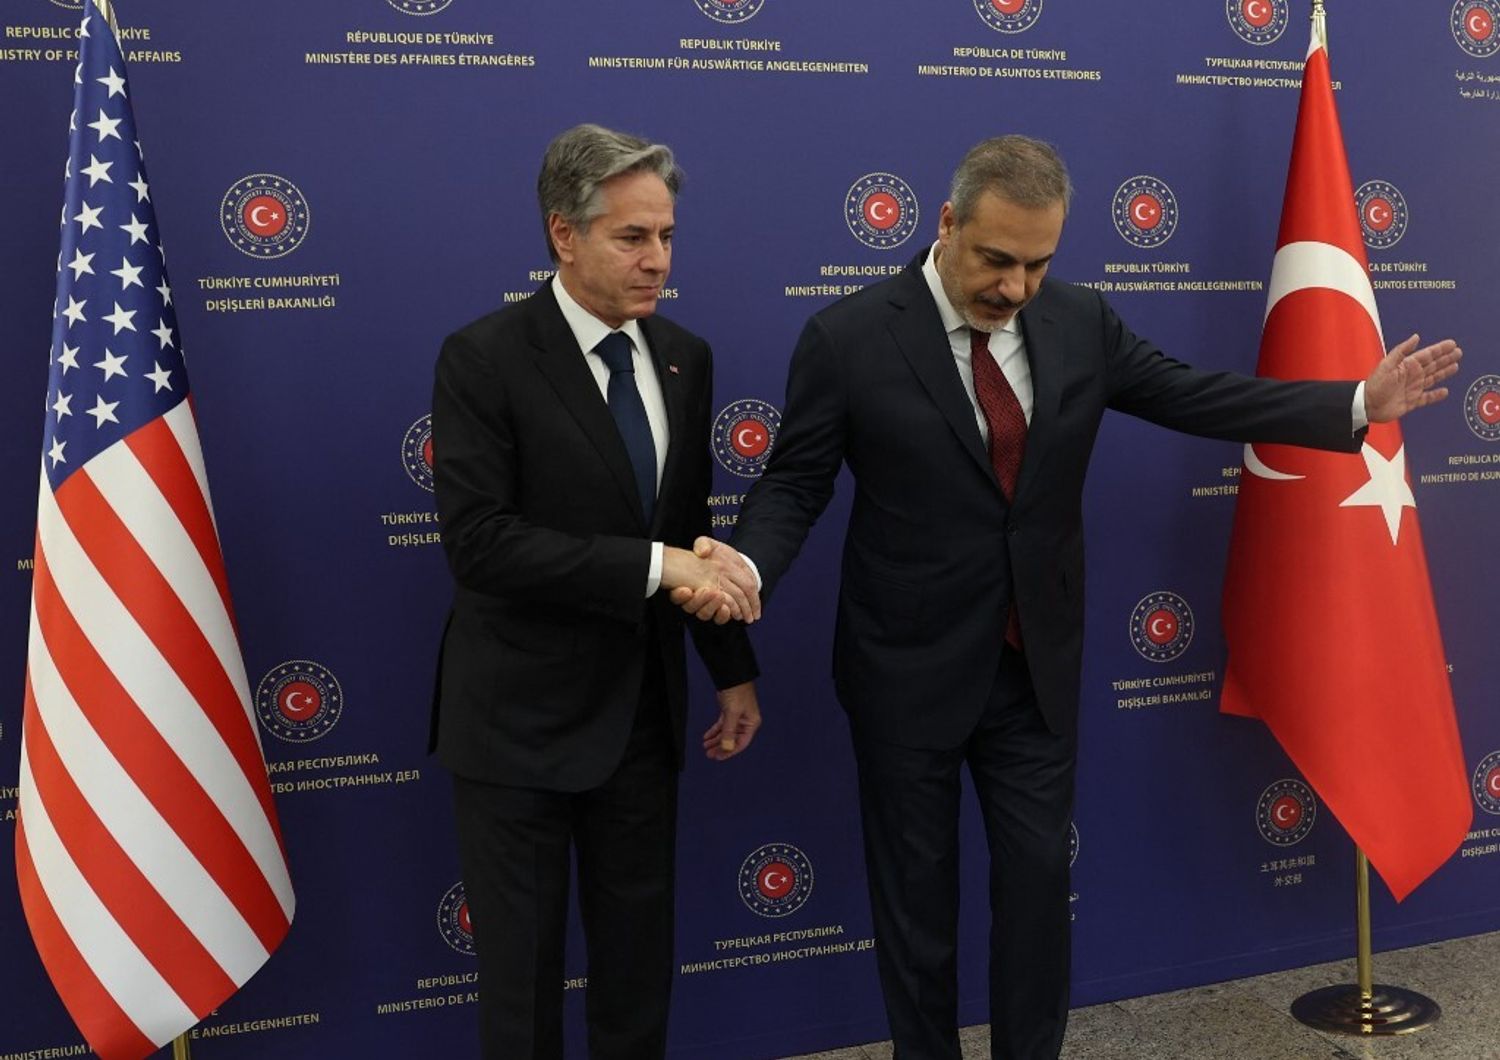 Il segretario di Stato americano,&nbsp;Anthony Blinken, e il ministro degli Esteri turco, Hakan Fidan&nbsp;